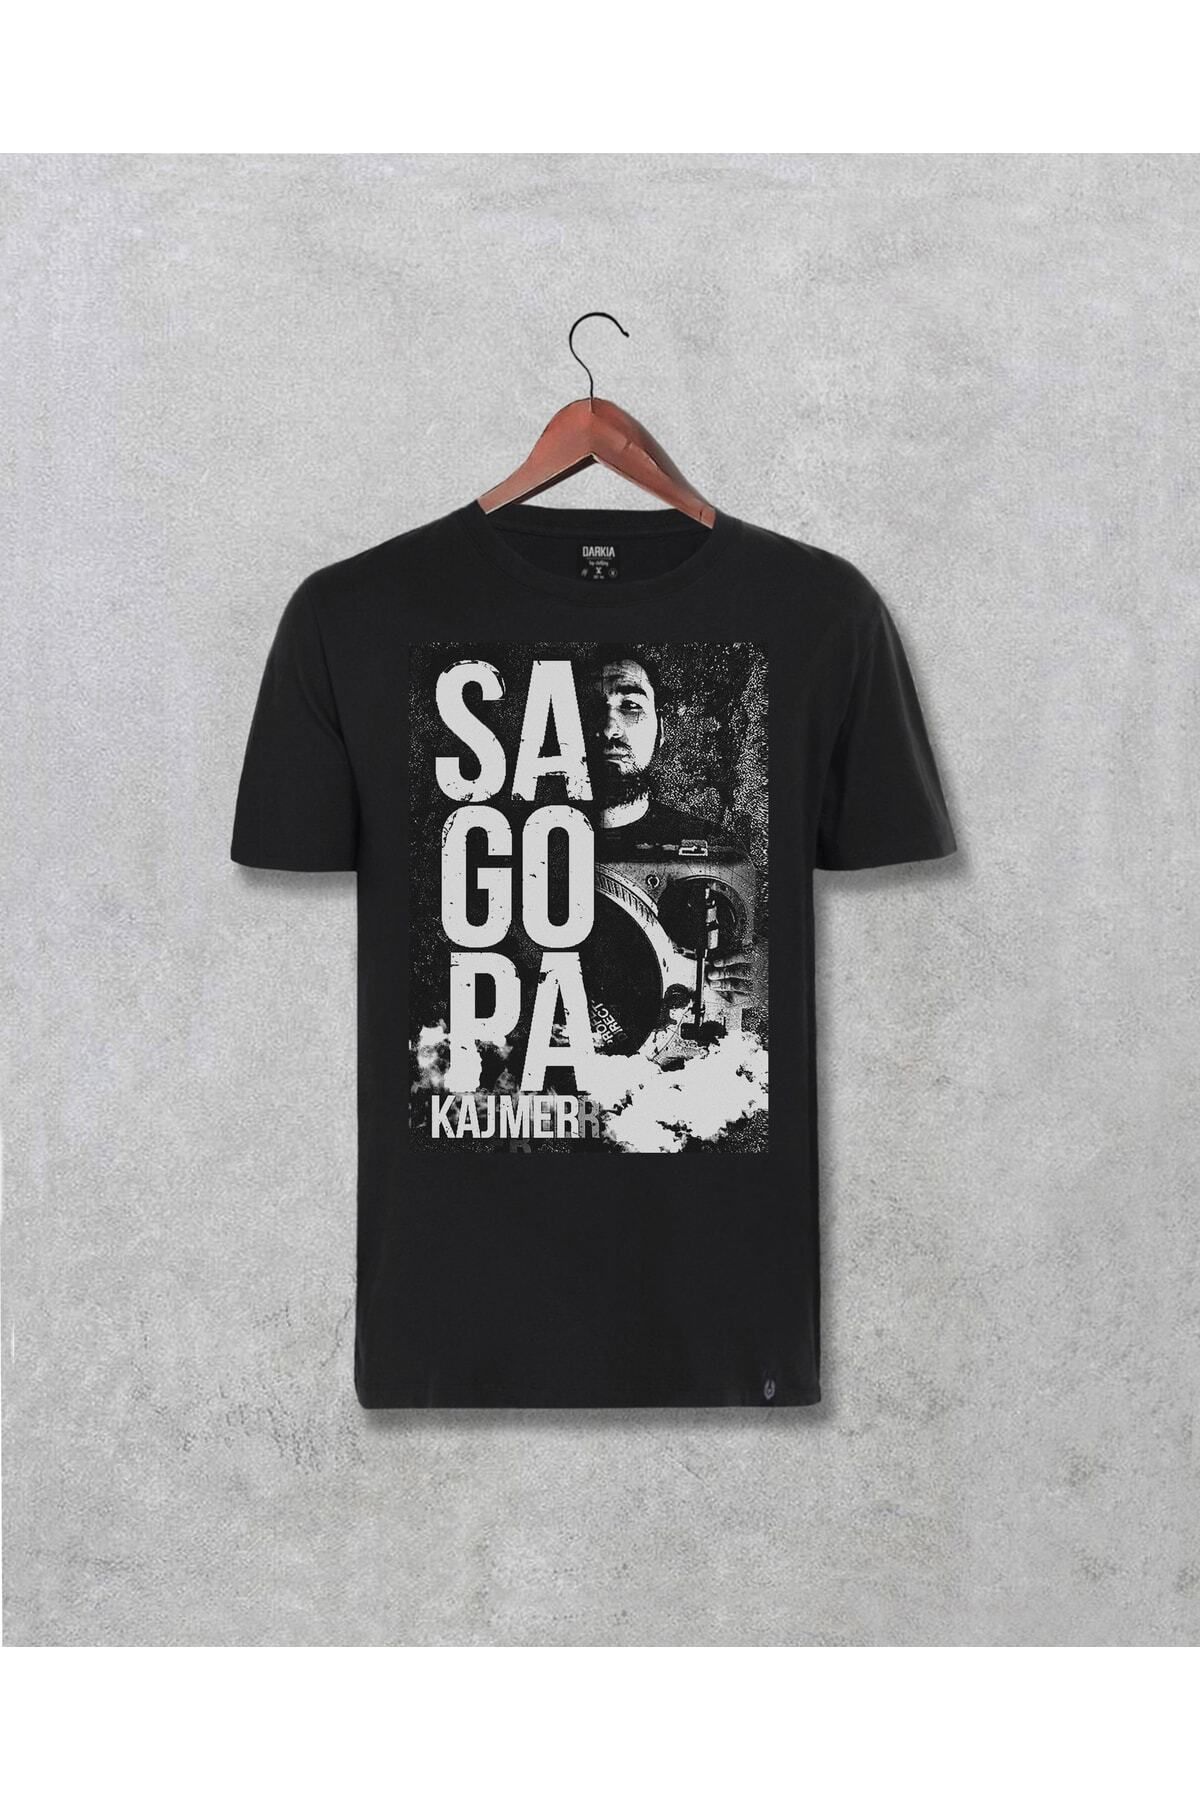 Pisa Art Sagopa Kajmer Tasarımı Baskılı T-shirt